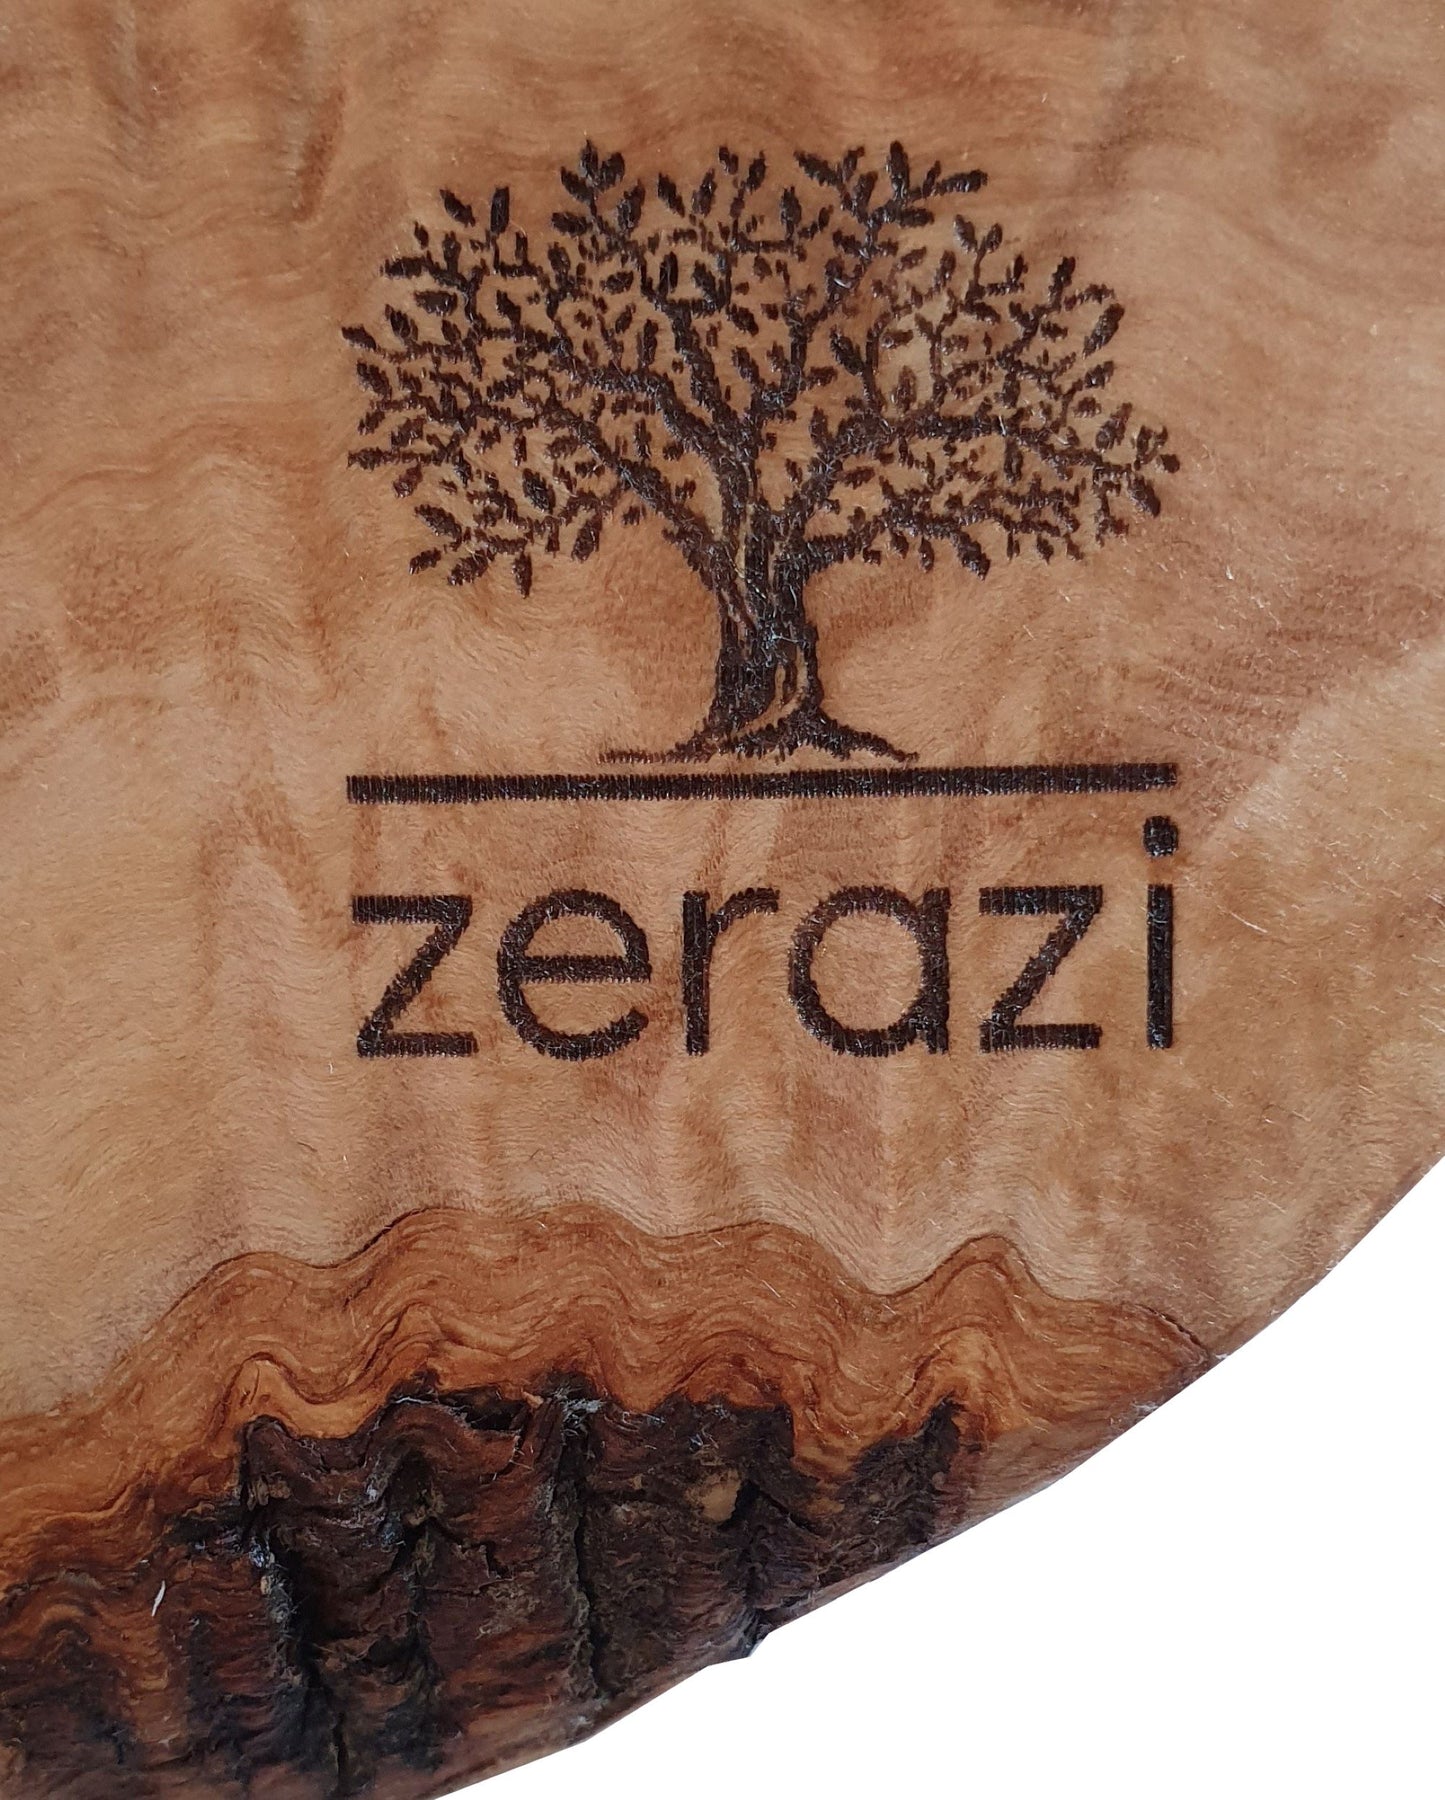 Zerazi | Tarro Con Cuchara Para Miel | Madera De Olivo | Ecológico | Hecho Totalmente A Mano | Sostenible | Higiénico